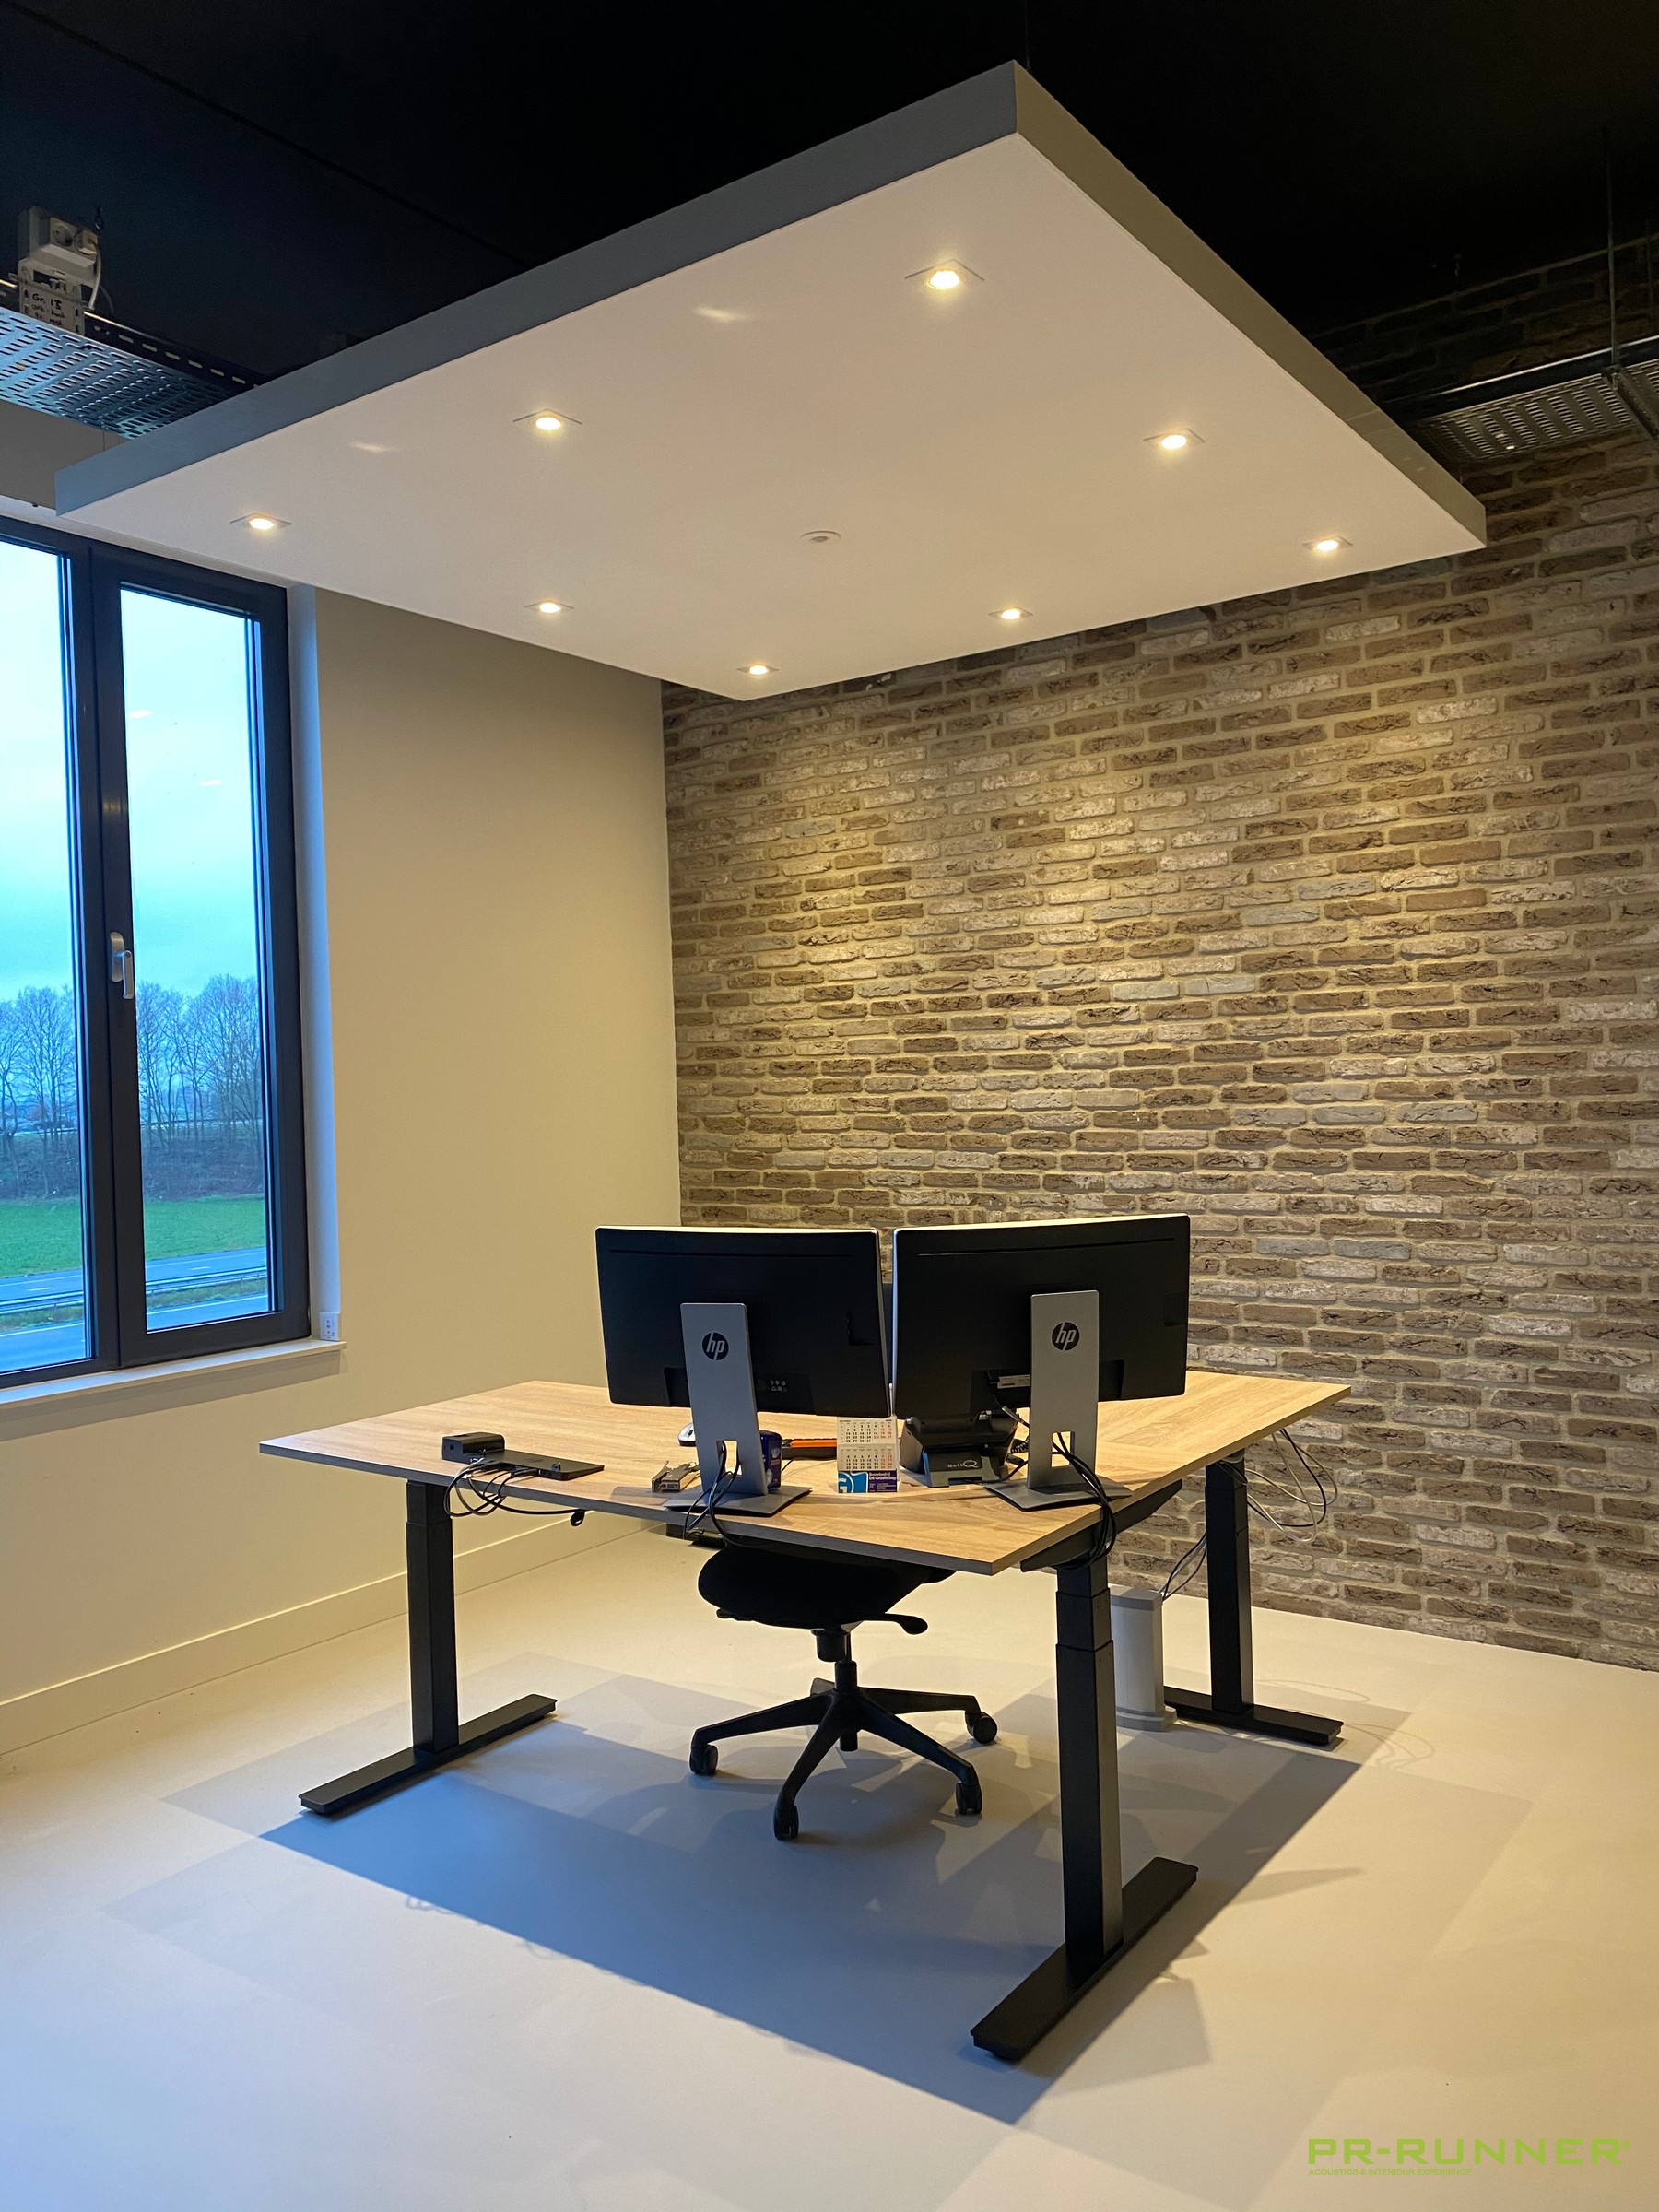 vrijhangend plafondeiland kantoor werkplek akoestisch geluiddempend LED verlichting